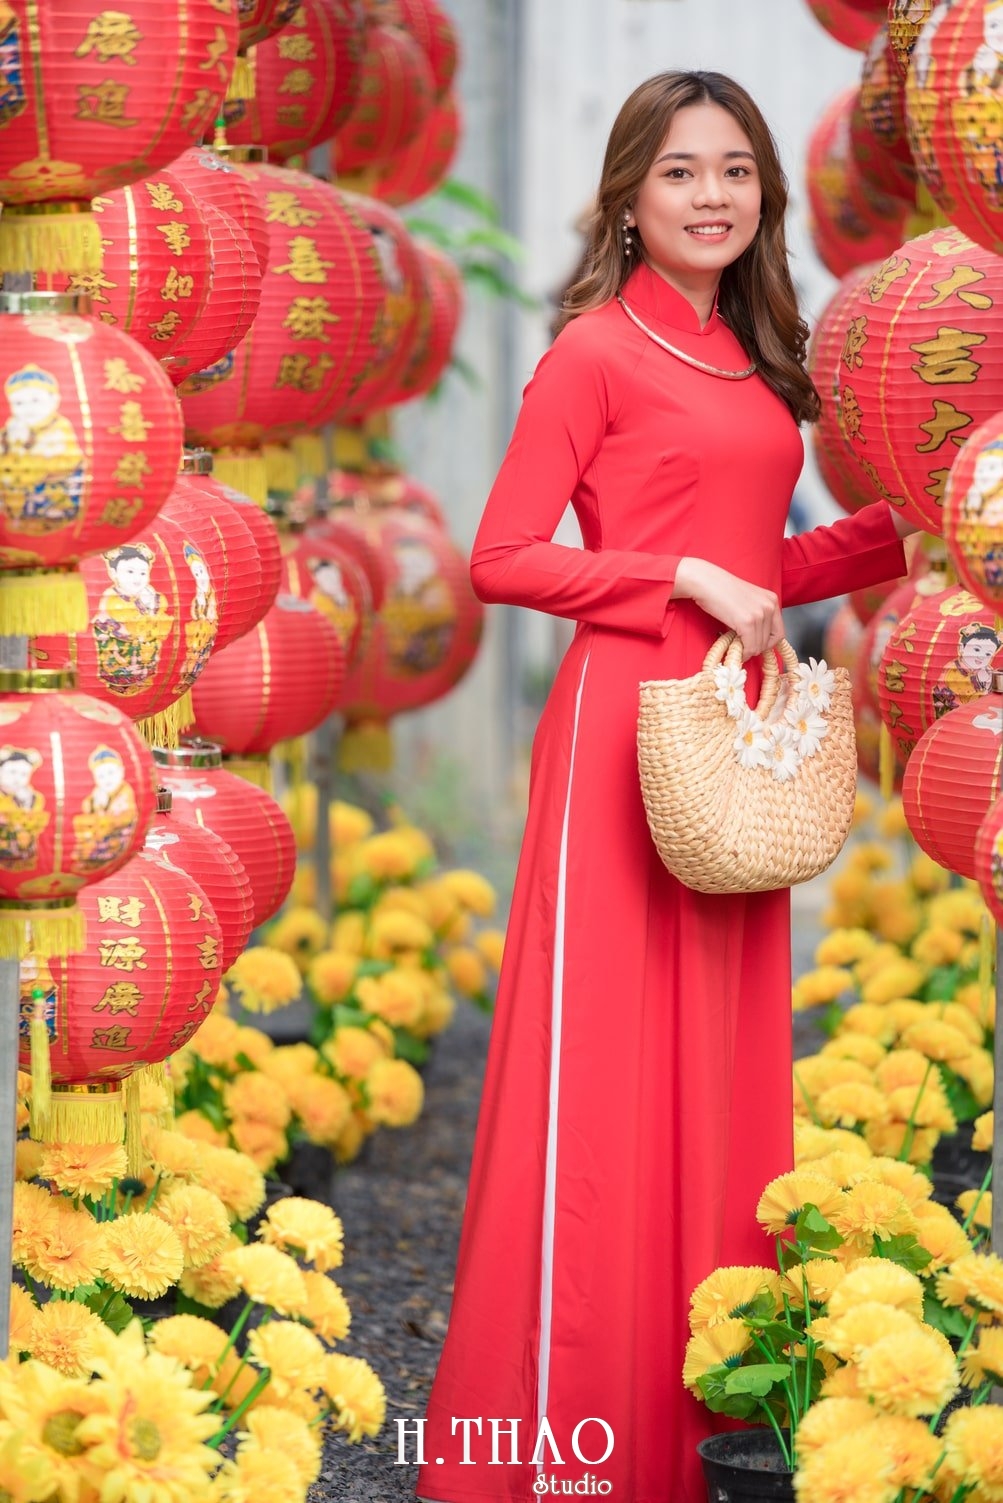 Ao dai tet do 14 - Top 40 ảnh áo dài chụp với Hoa đào, hoa mai tết tuyệt đẹp- HThao Studio